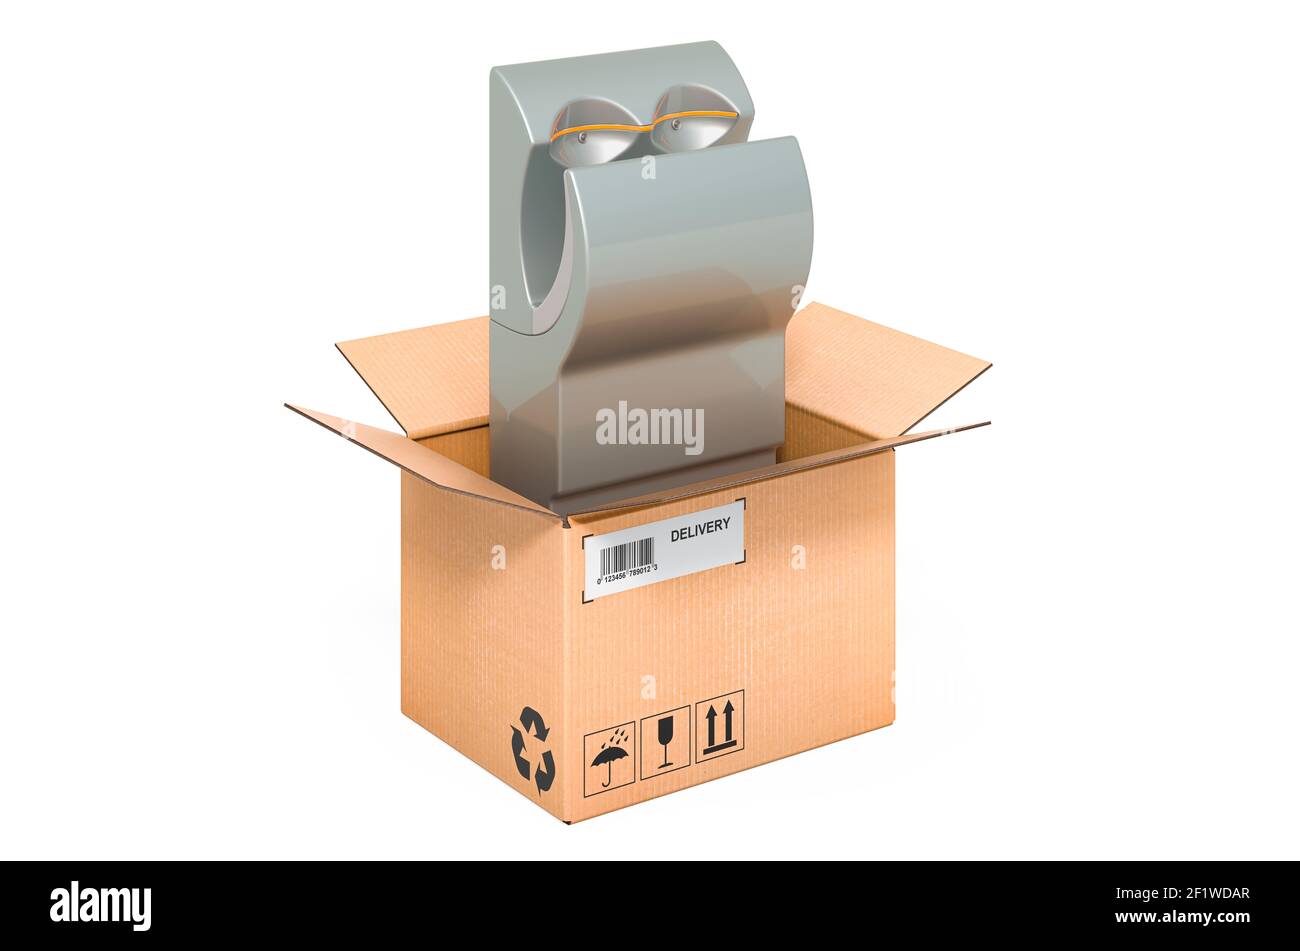 Sèche-mains à l'intérieur de la boîte en carton, concept de livraison. Rendu 3D isolé sur fond blanc Banque D'Images